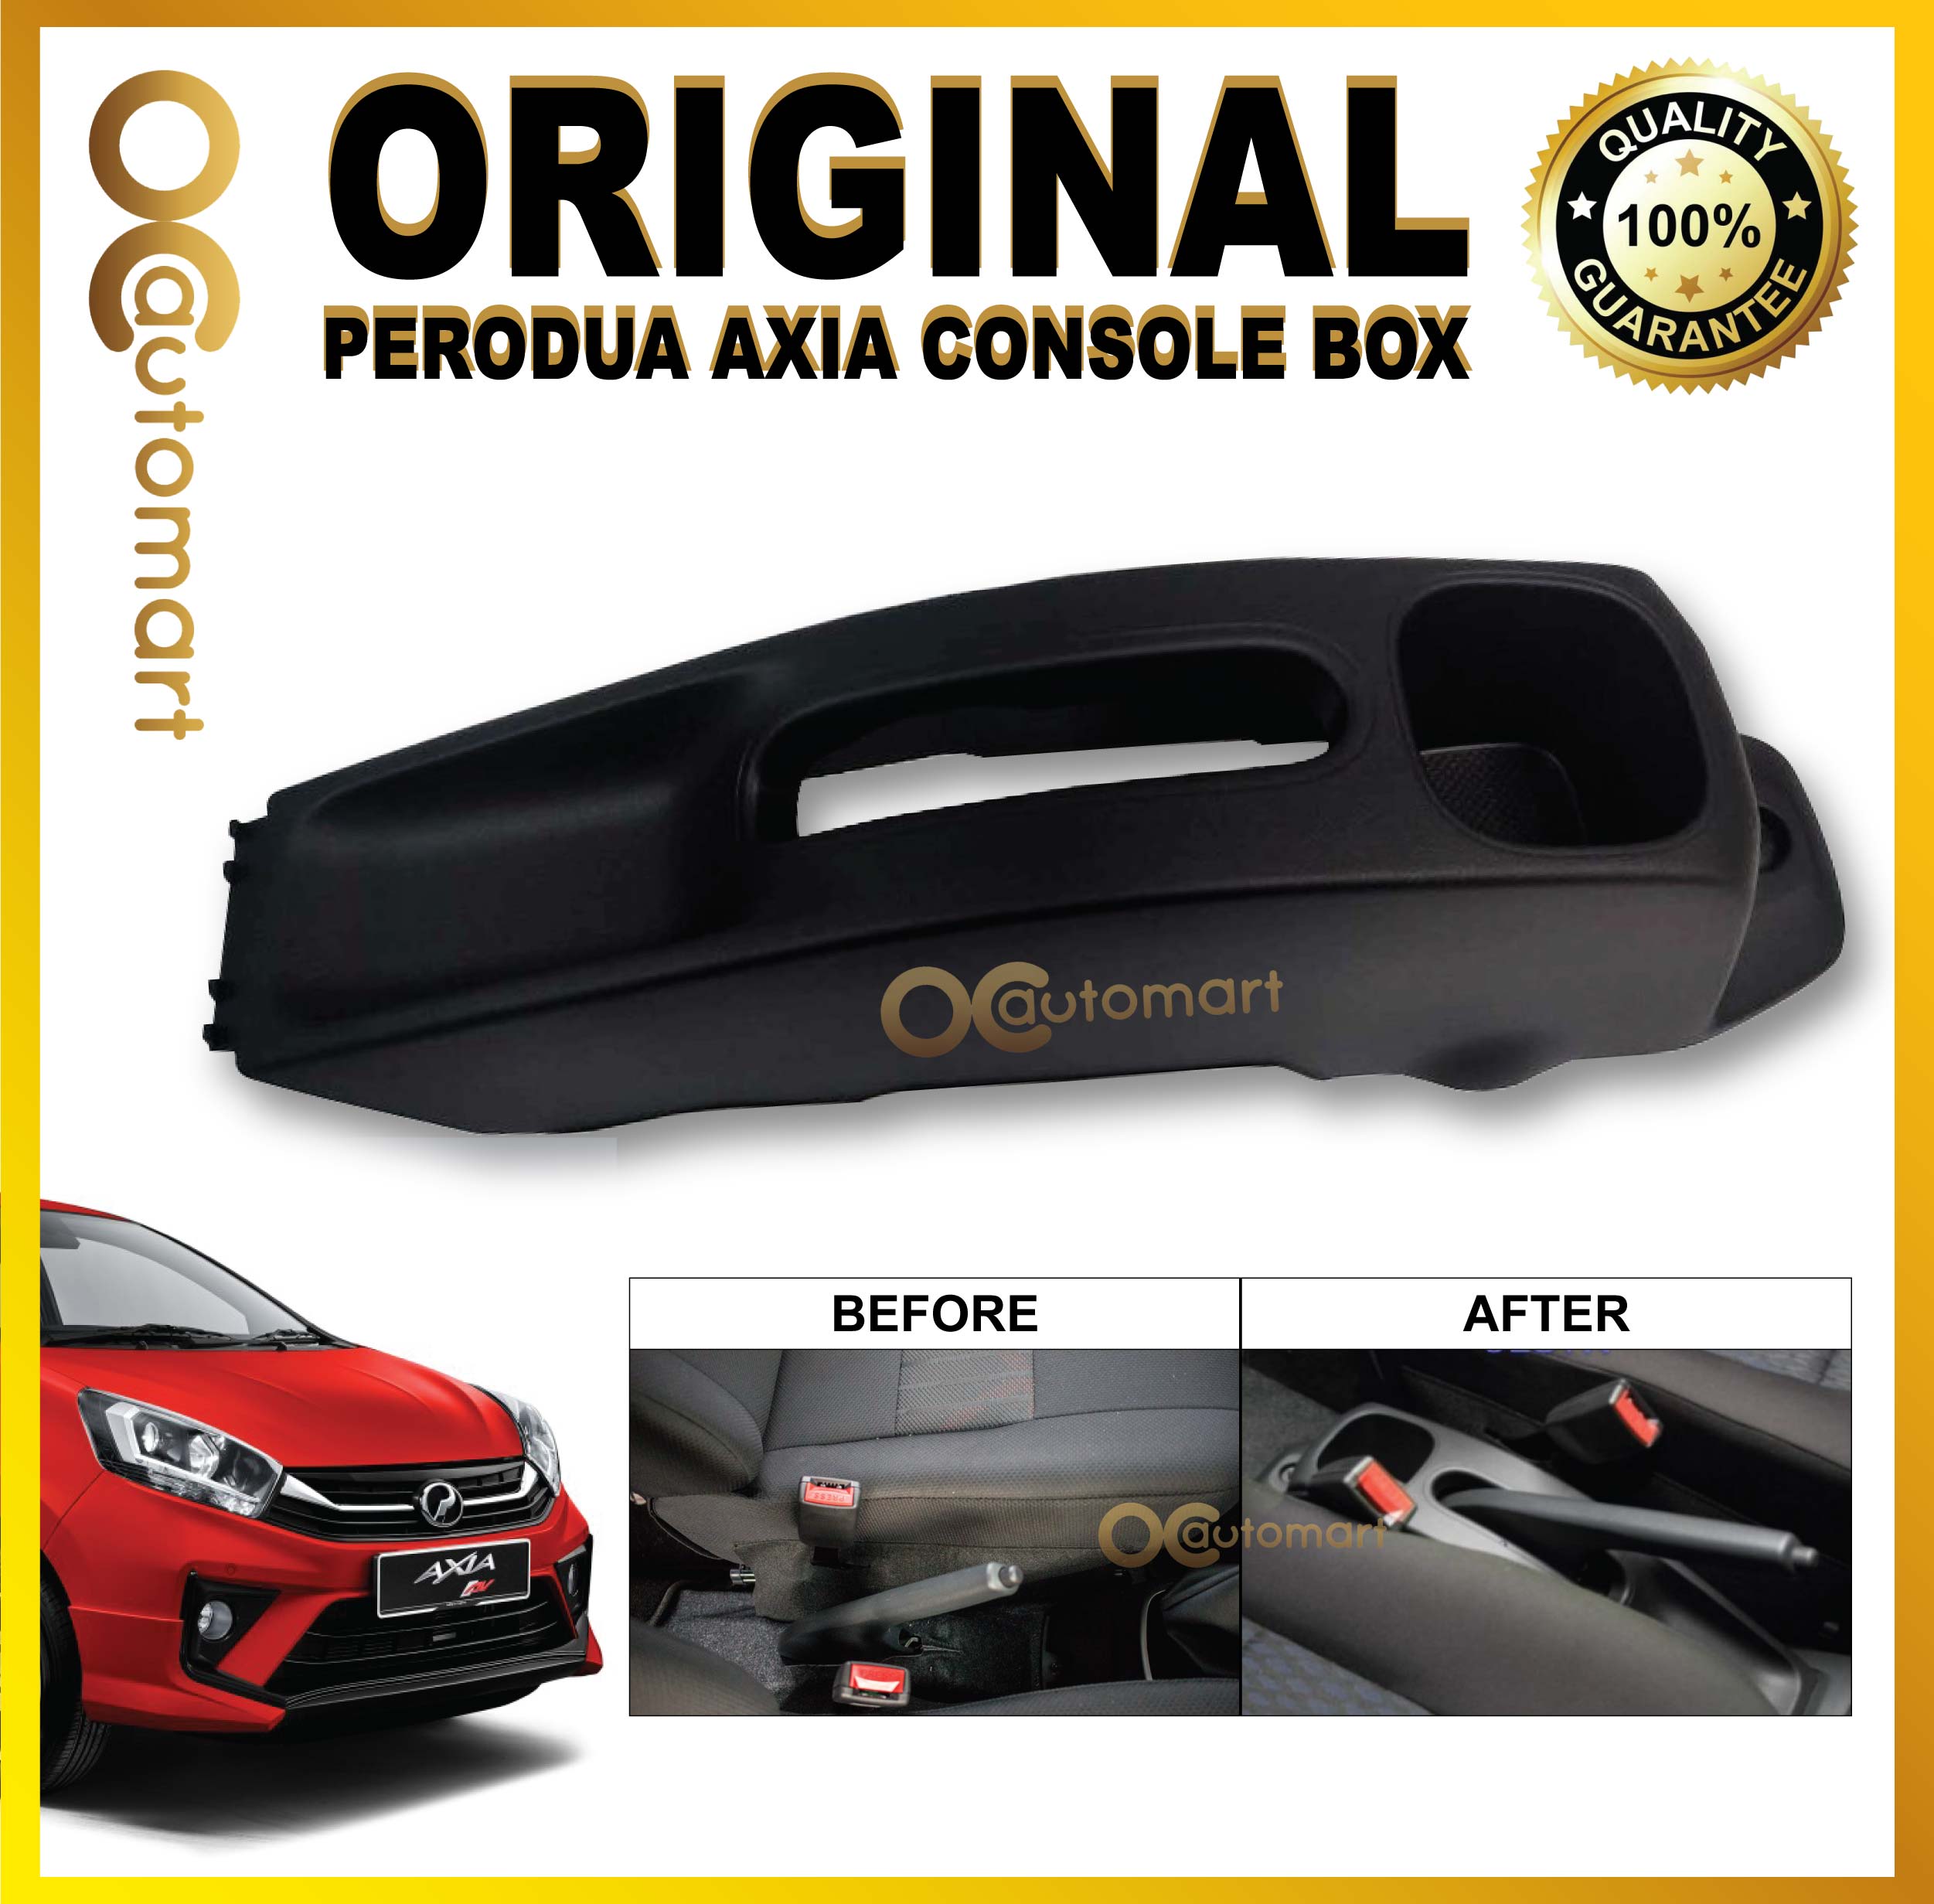 Original center console Perodua axia (Suitable for E spec)